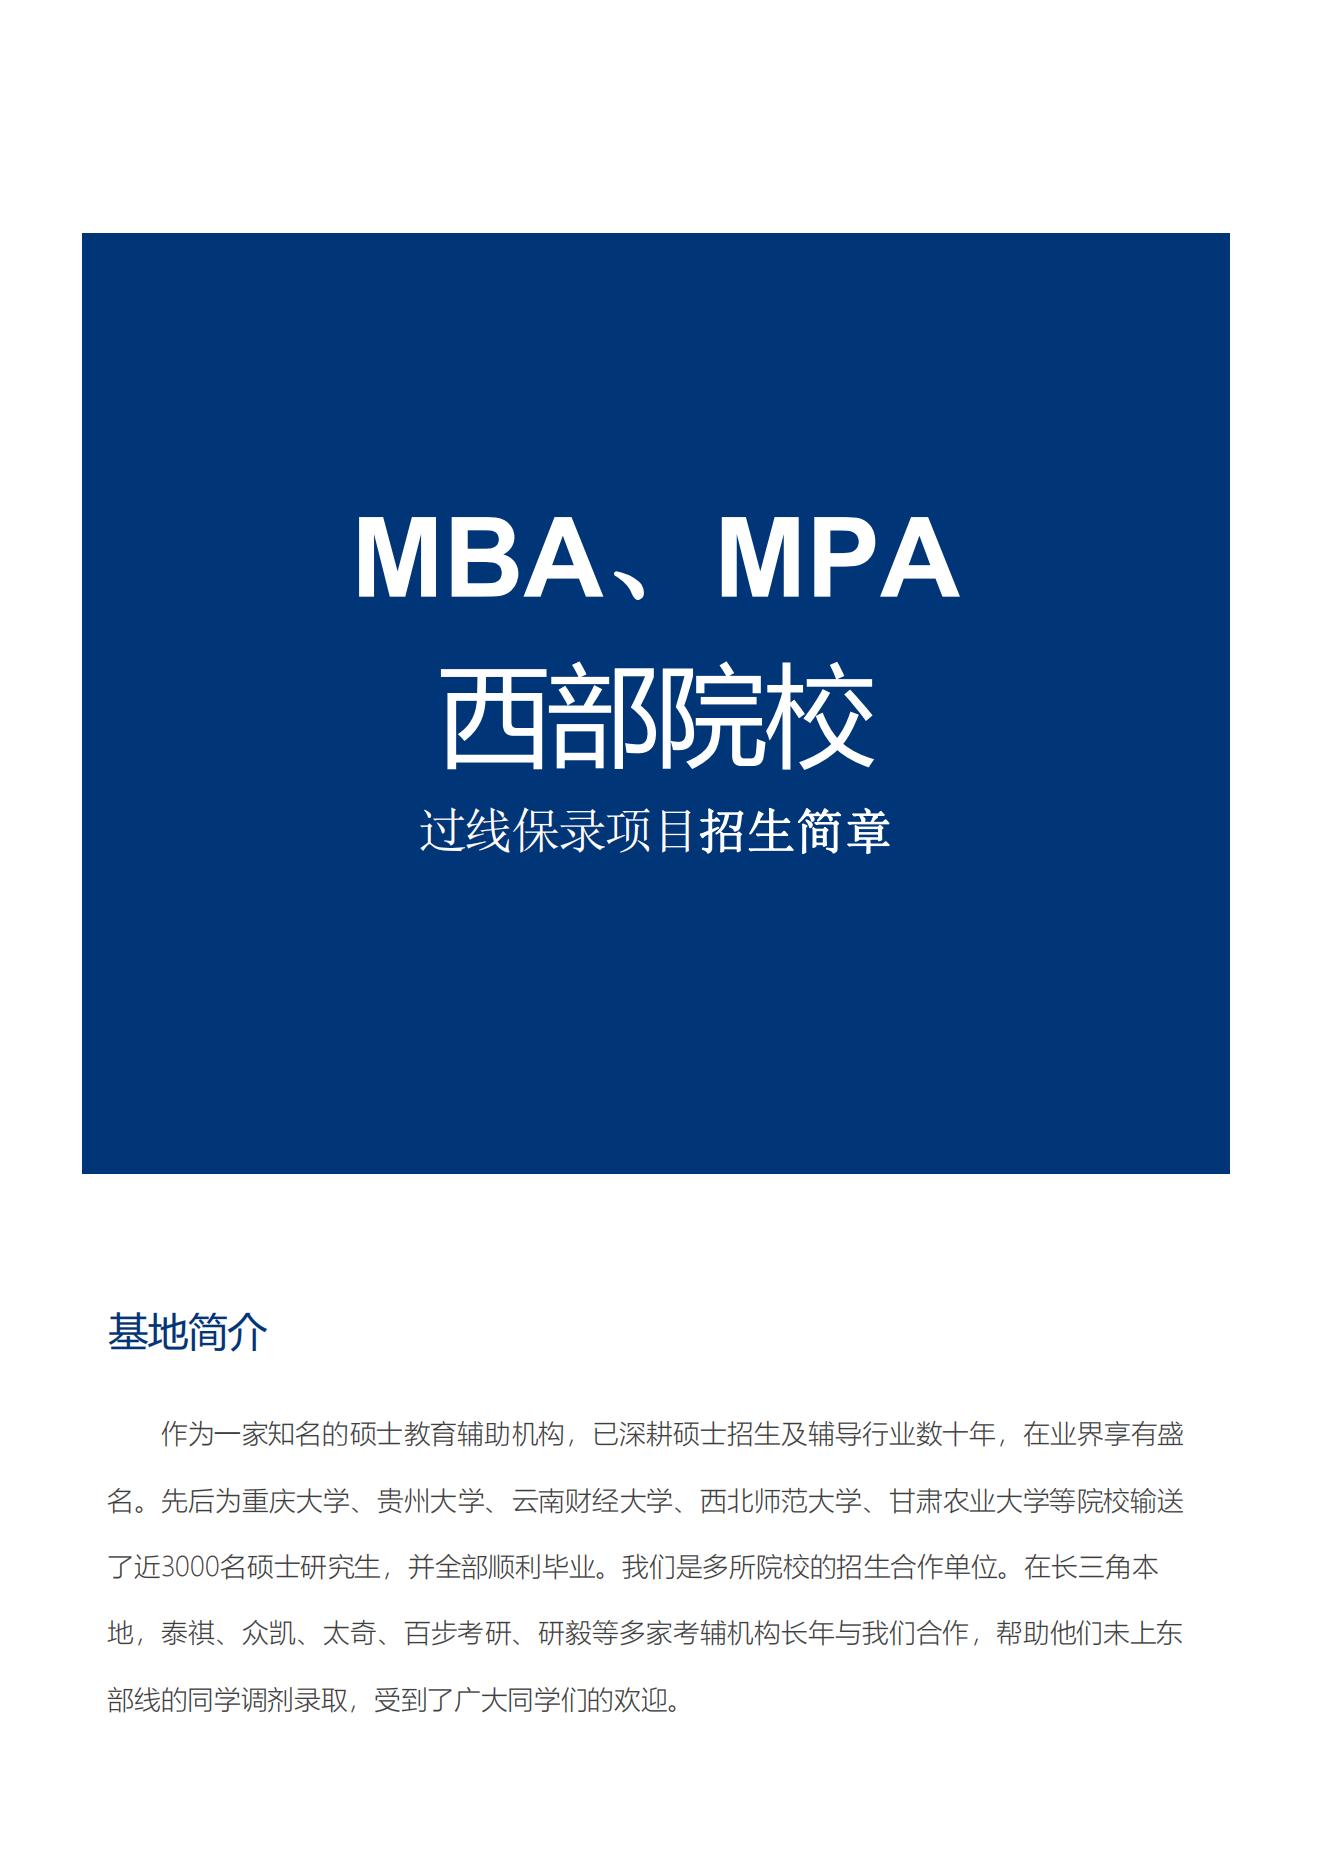 甘肃农大MBA、MPA招生简章2_00